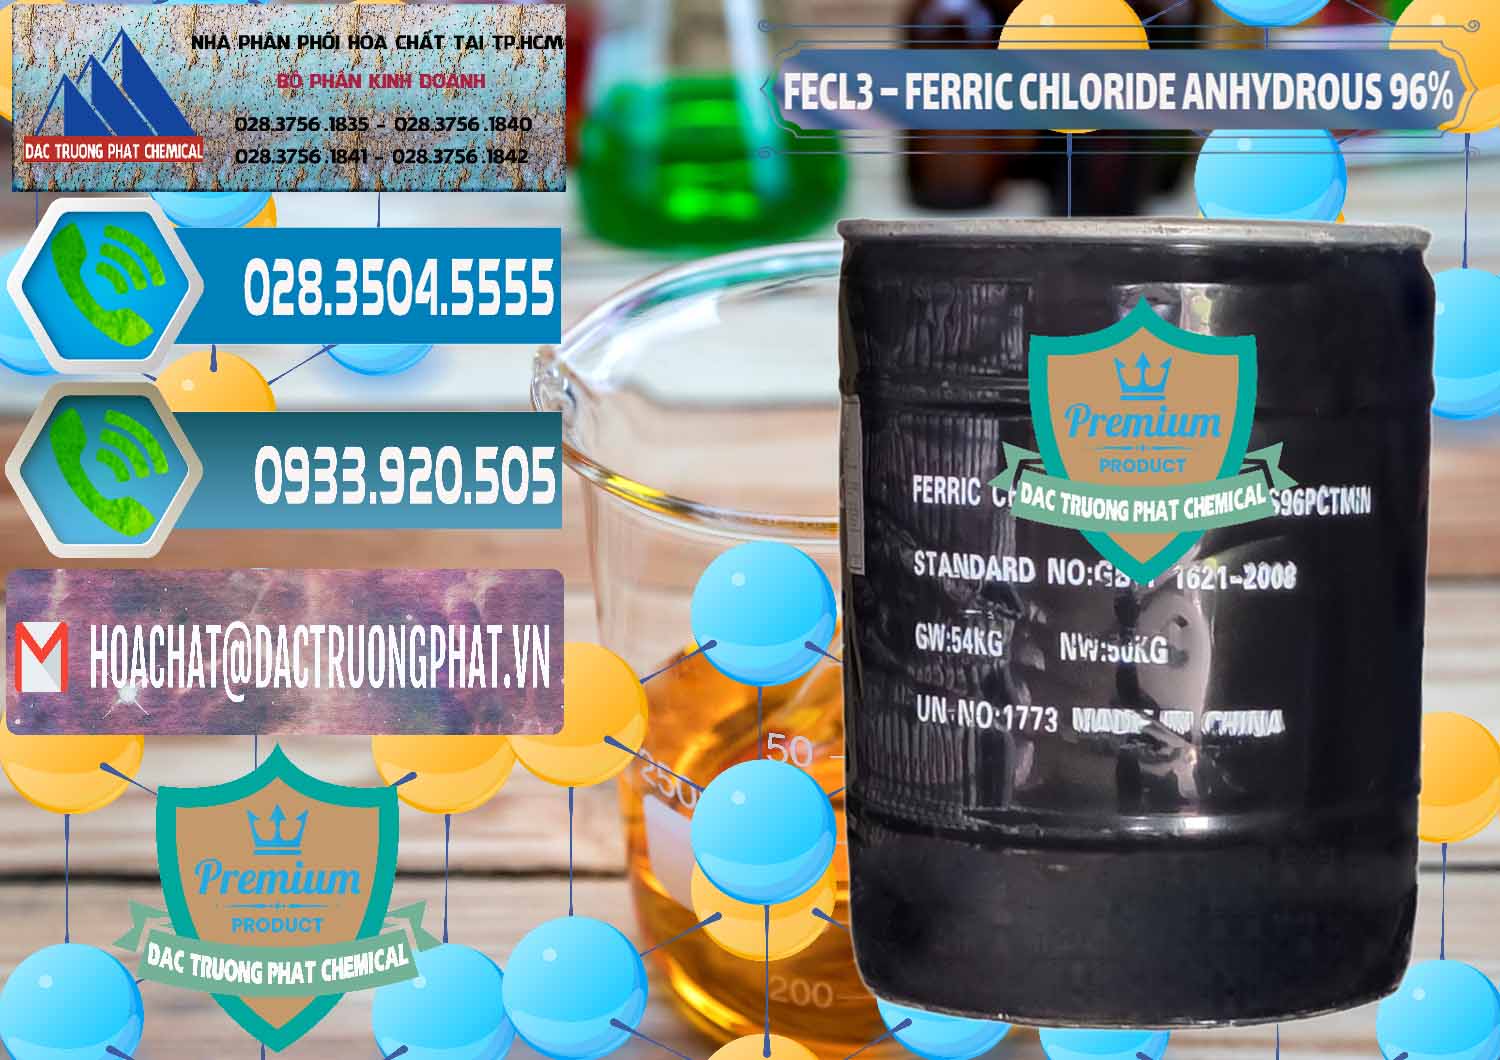 Nơi bán _ cung ứng FECL3 – Ferric Chloride Anhydrous 96% Trung Quốc China - 0065 - Công ty chuyên bán _ phân phối hóa chất tại TP.HCM - congtyhoachat.net